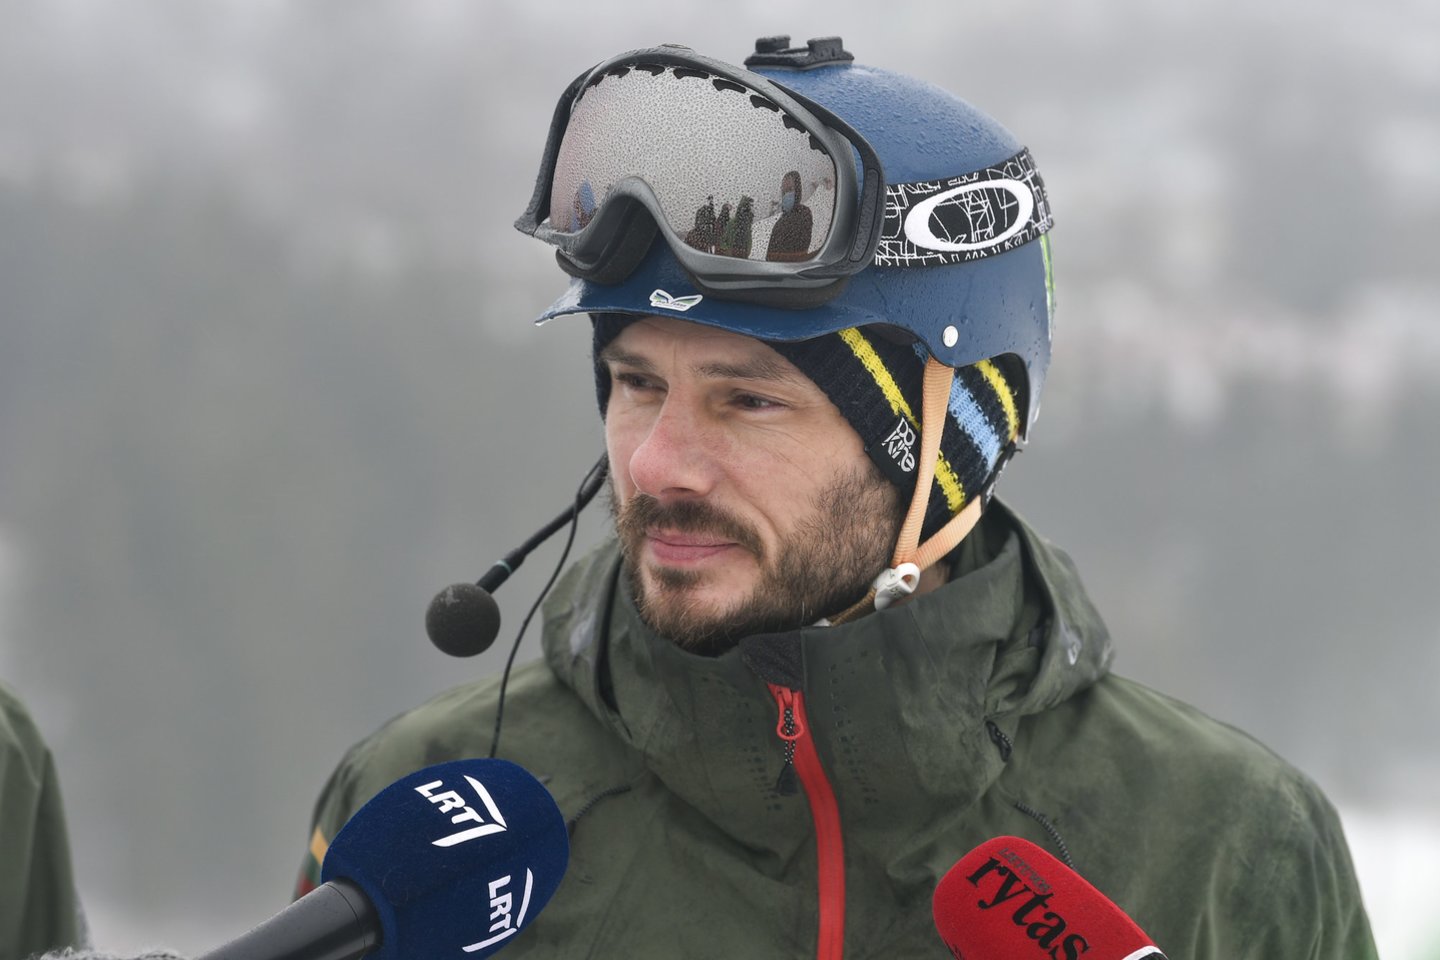  Neregys kalnų slidininkas debiutuos pasaulio čempionate<br> V. Ščiavinsko nuotr.